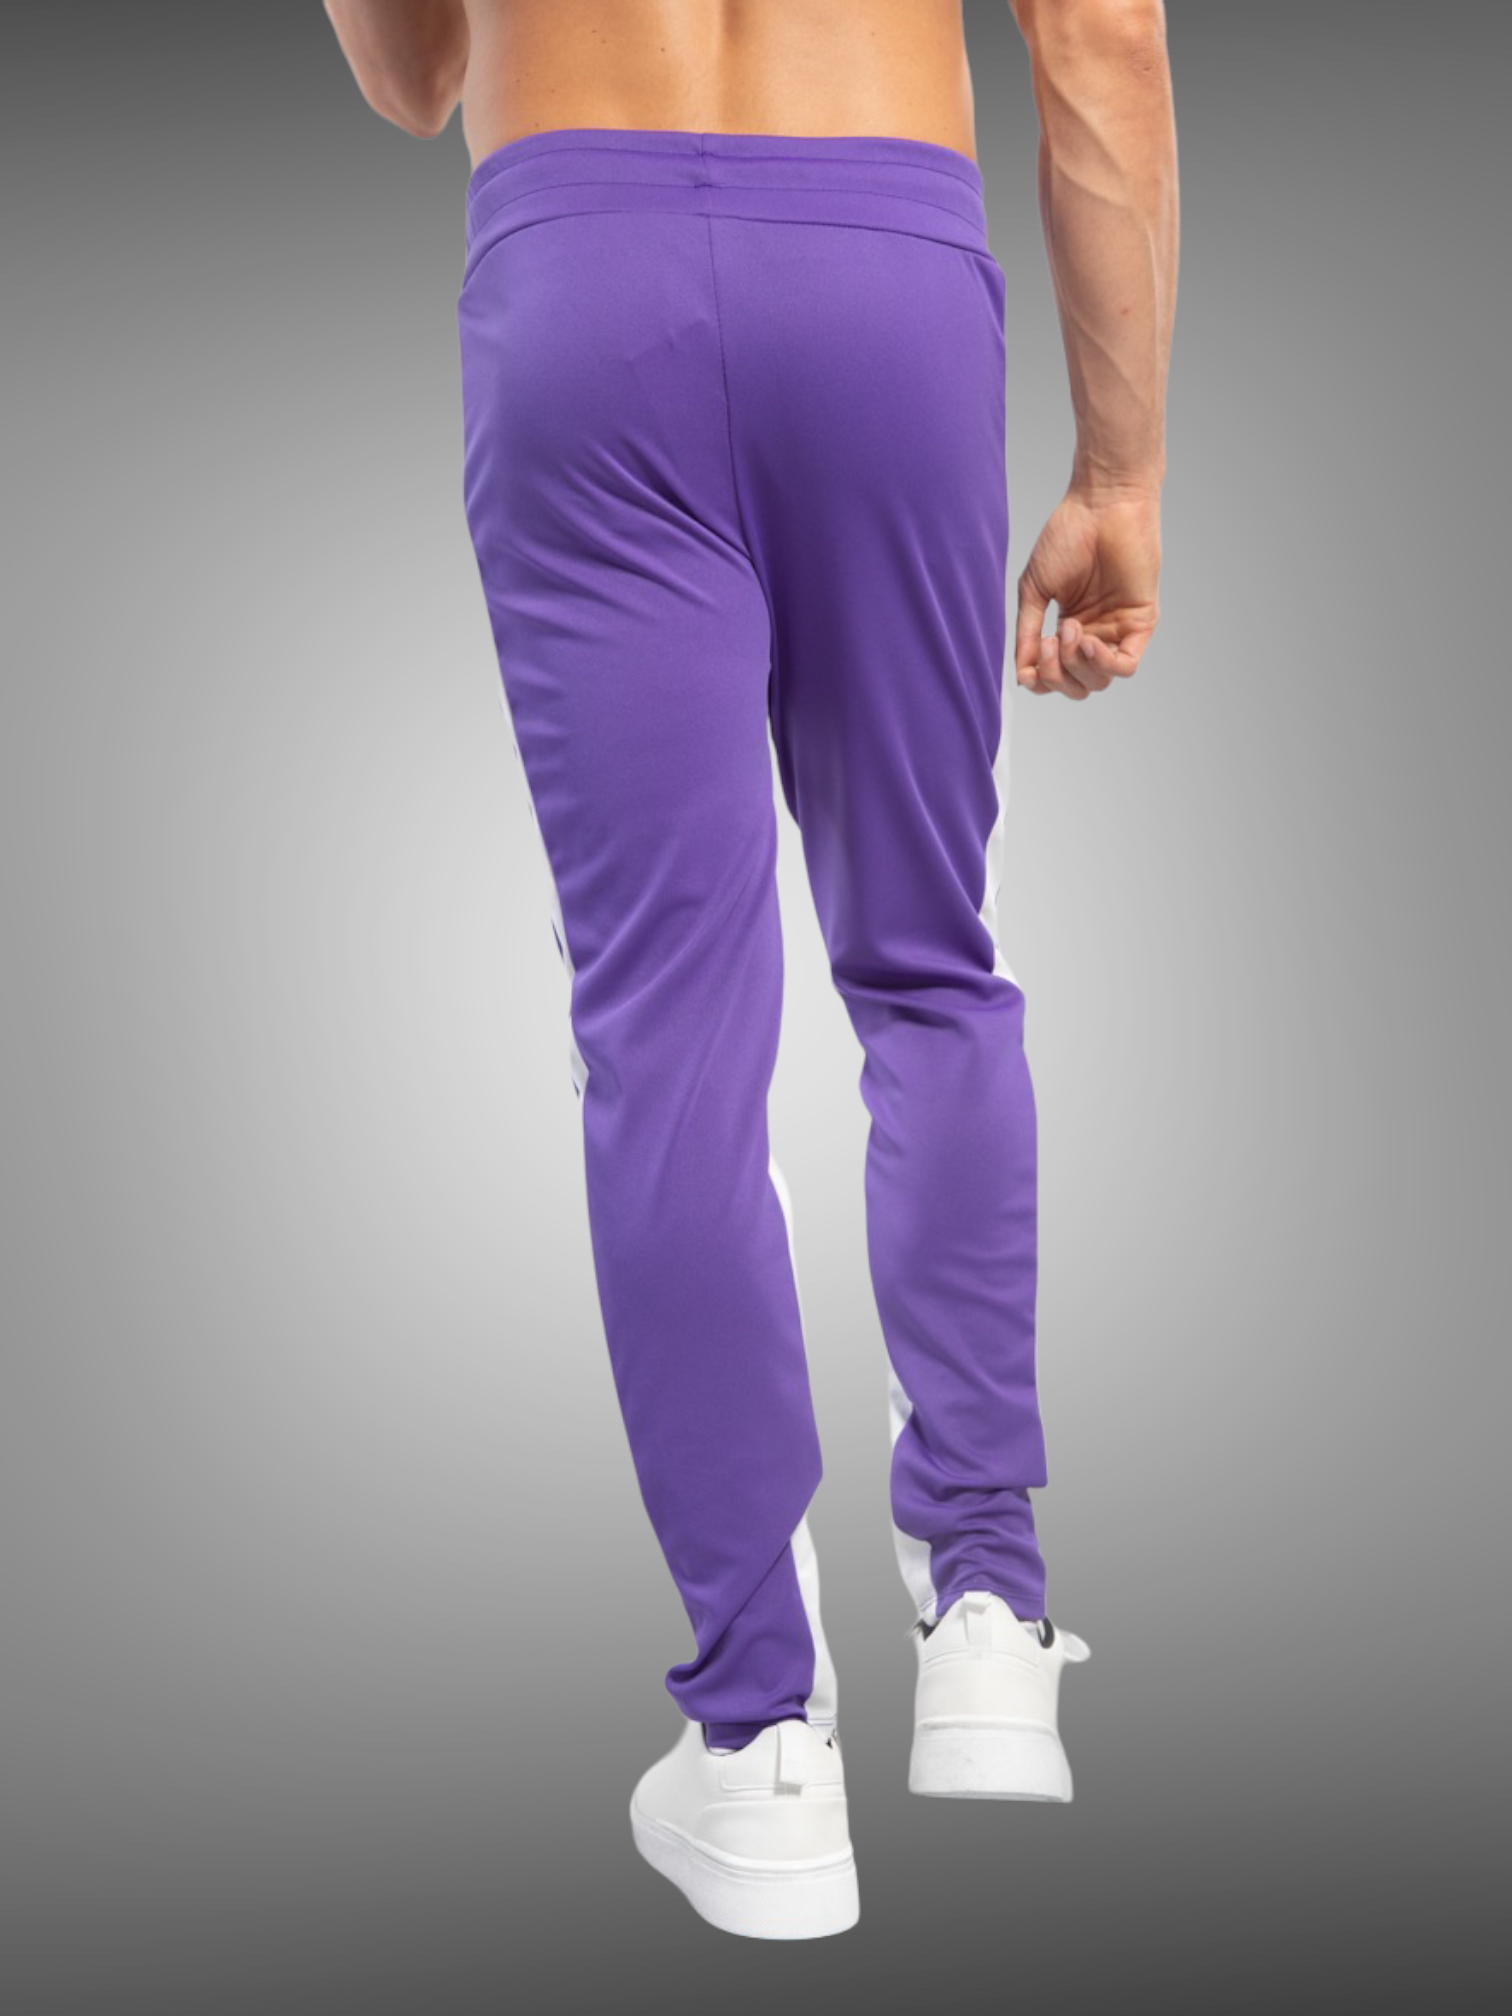 Frilivin - Pantalon violet bande blanche - Stayin